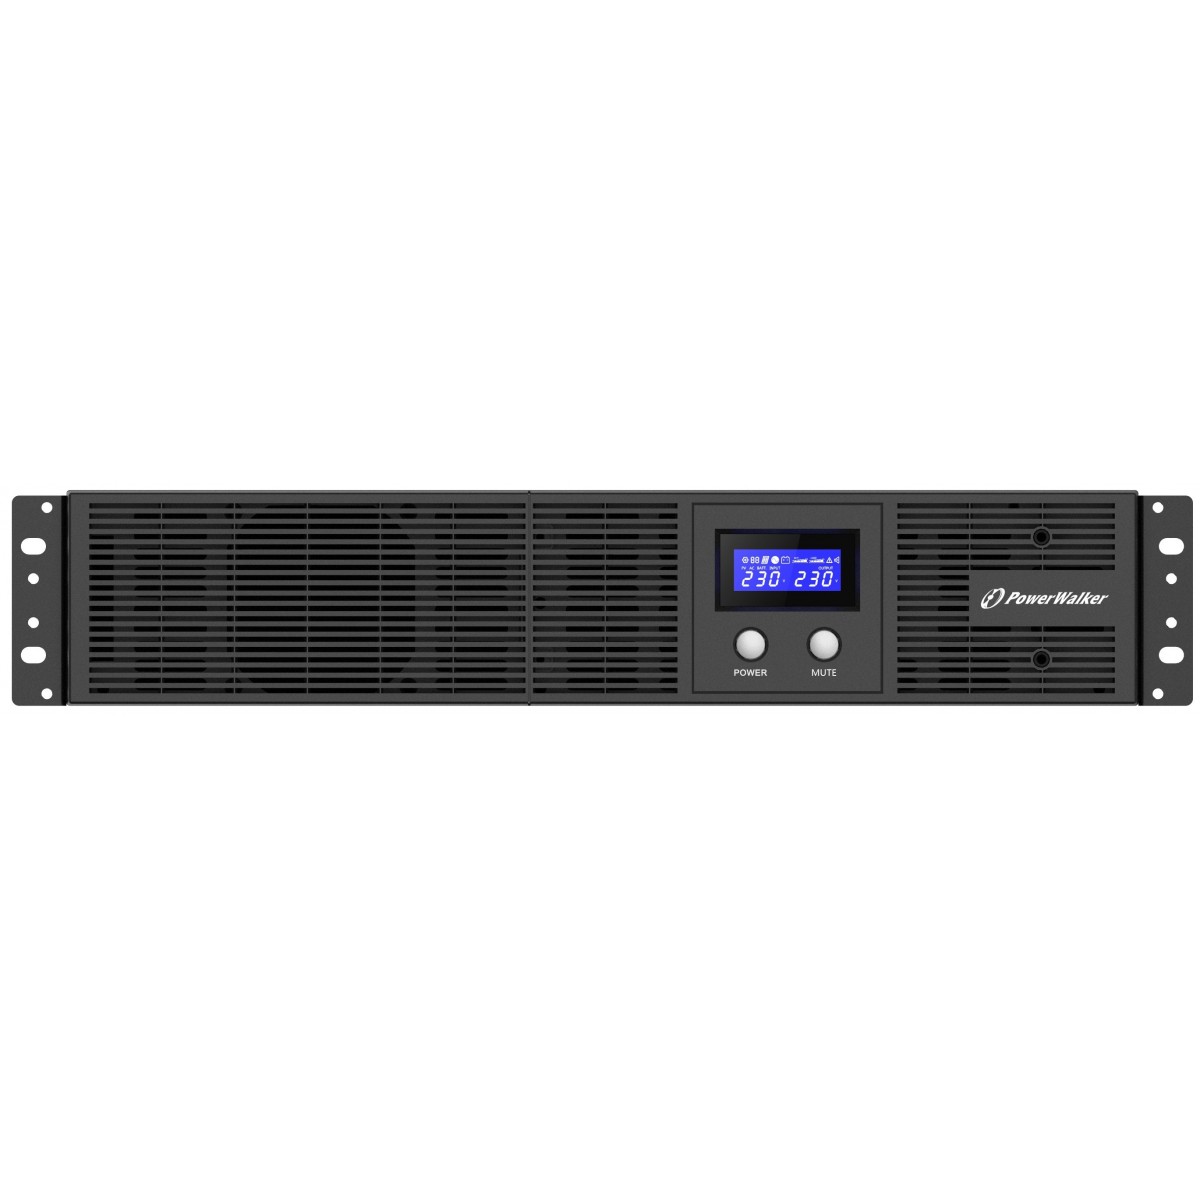 BlueWalker VI 3000 RLE - 3 kVA - 1800 W - 165 V - 290 V - 50 Hz - 230 V